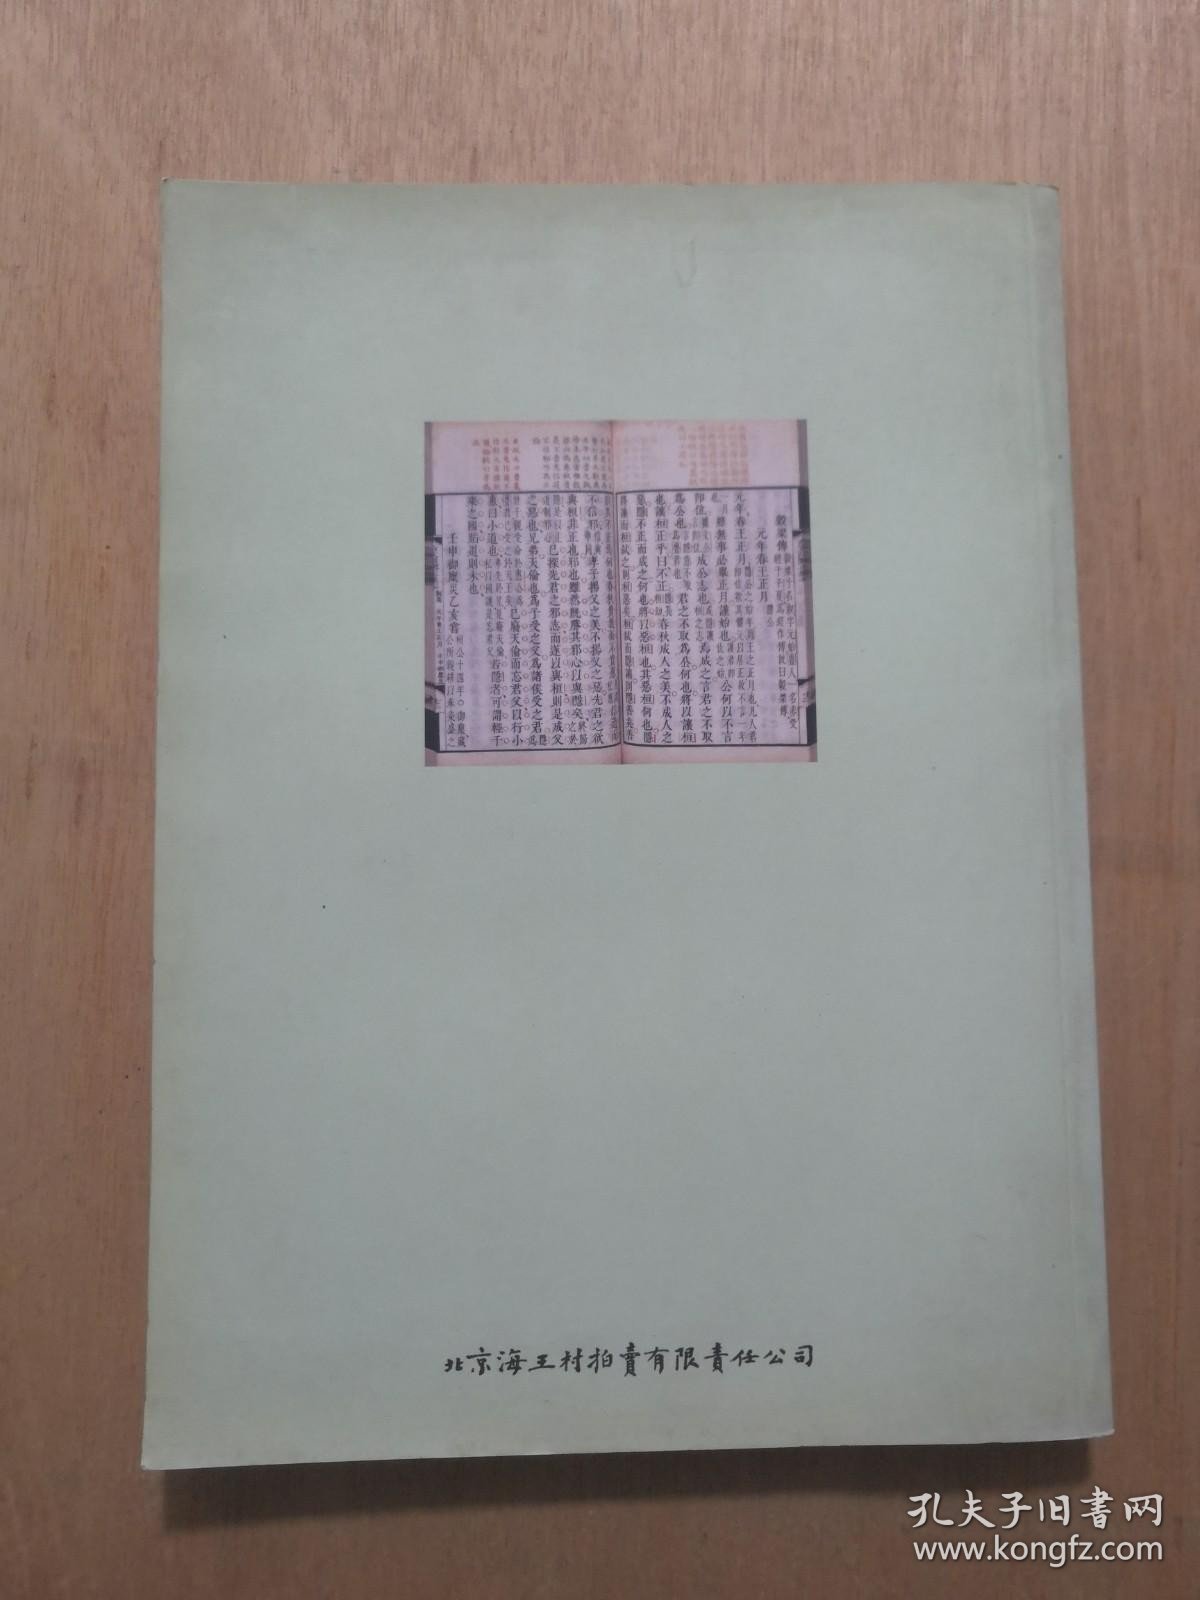 中国书店 2010年春季书刊资料拍卖会 古籍善本